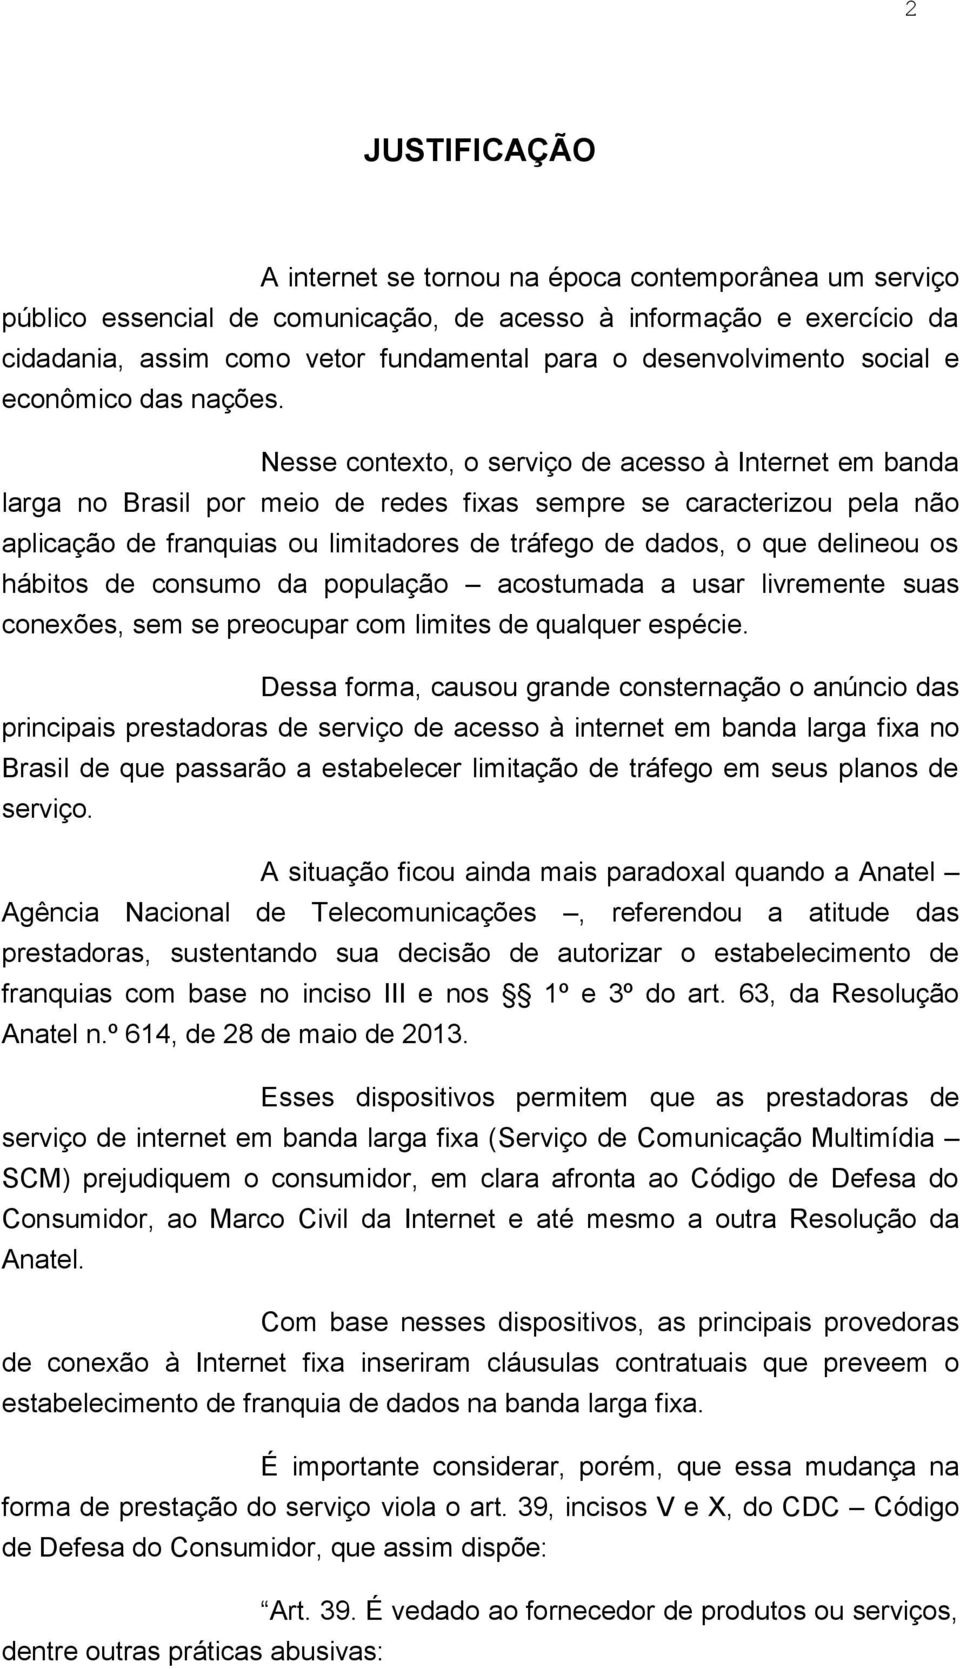 Nesse contexto, o serviço de acesso à Internet em banda larga no Brasil por meio de redes fixas sempre se caracterizou pela não aplicação de franquias ou limitadores de tráfego de dados, o que